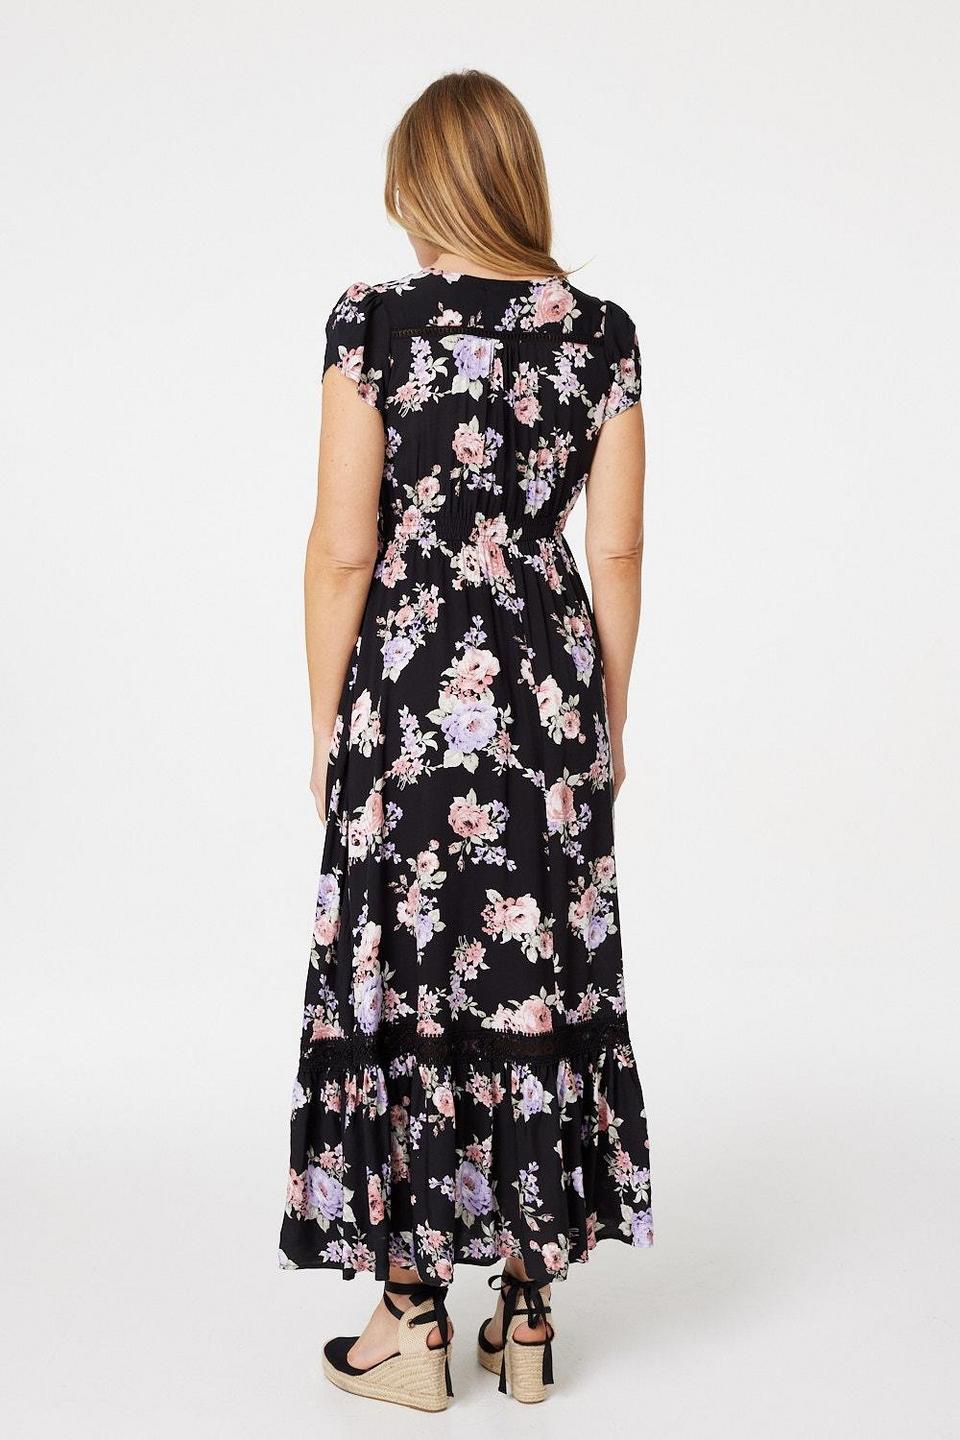 Dresses | Floral Lace Trim Maxi Dress | Izabel London